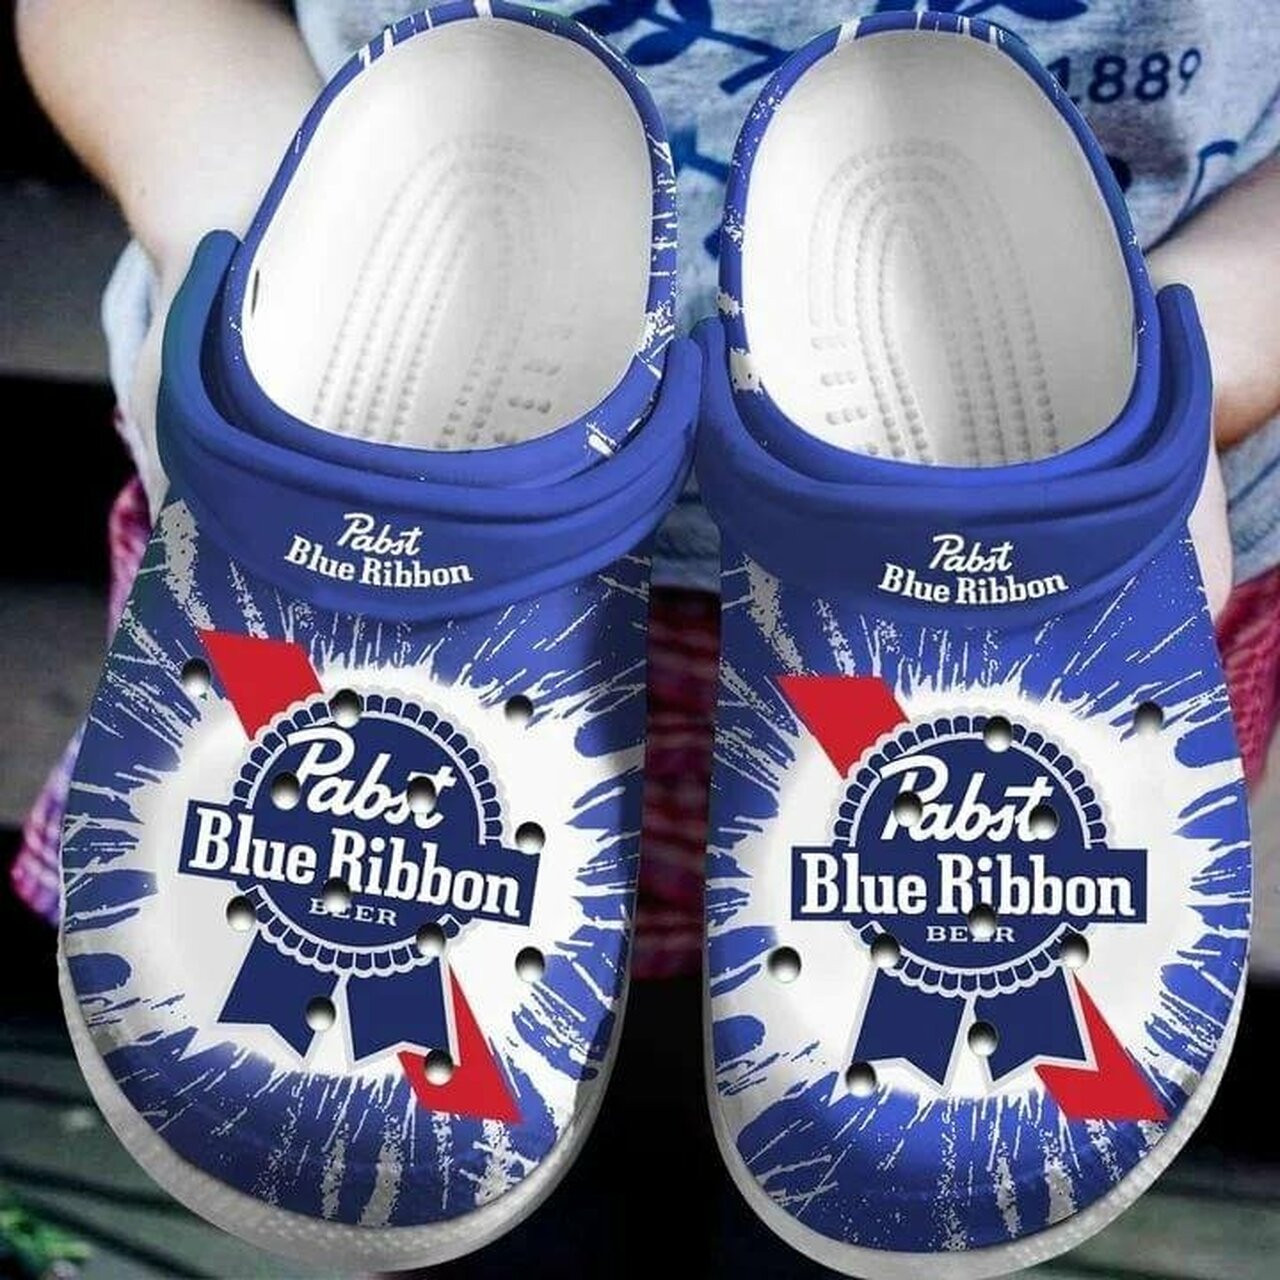 Pabst Blue Ribbon Beer Crocs Crocband Clog Shoes For Men Women